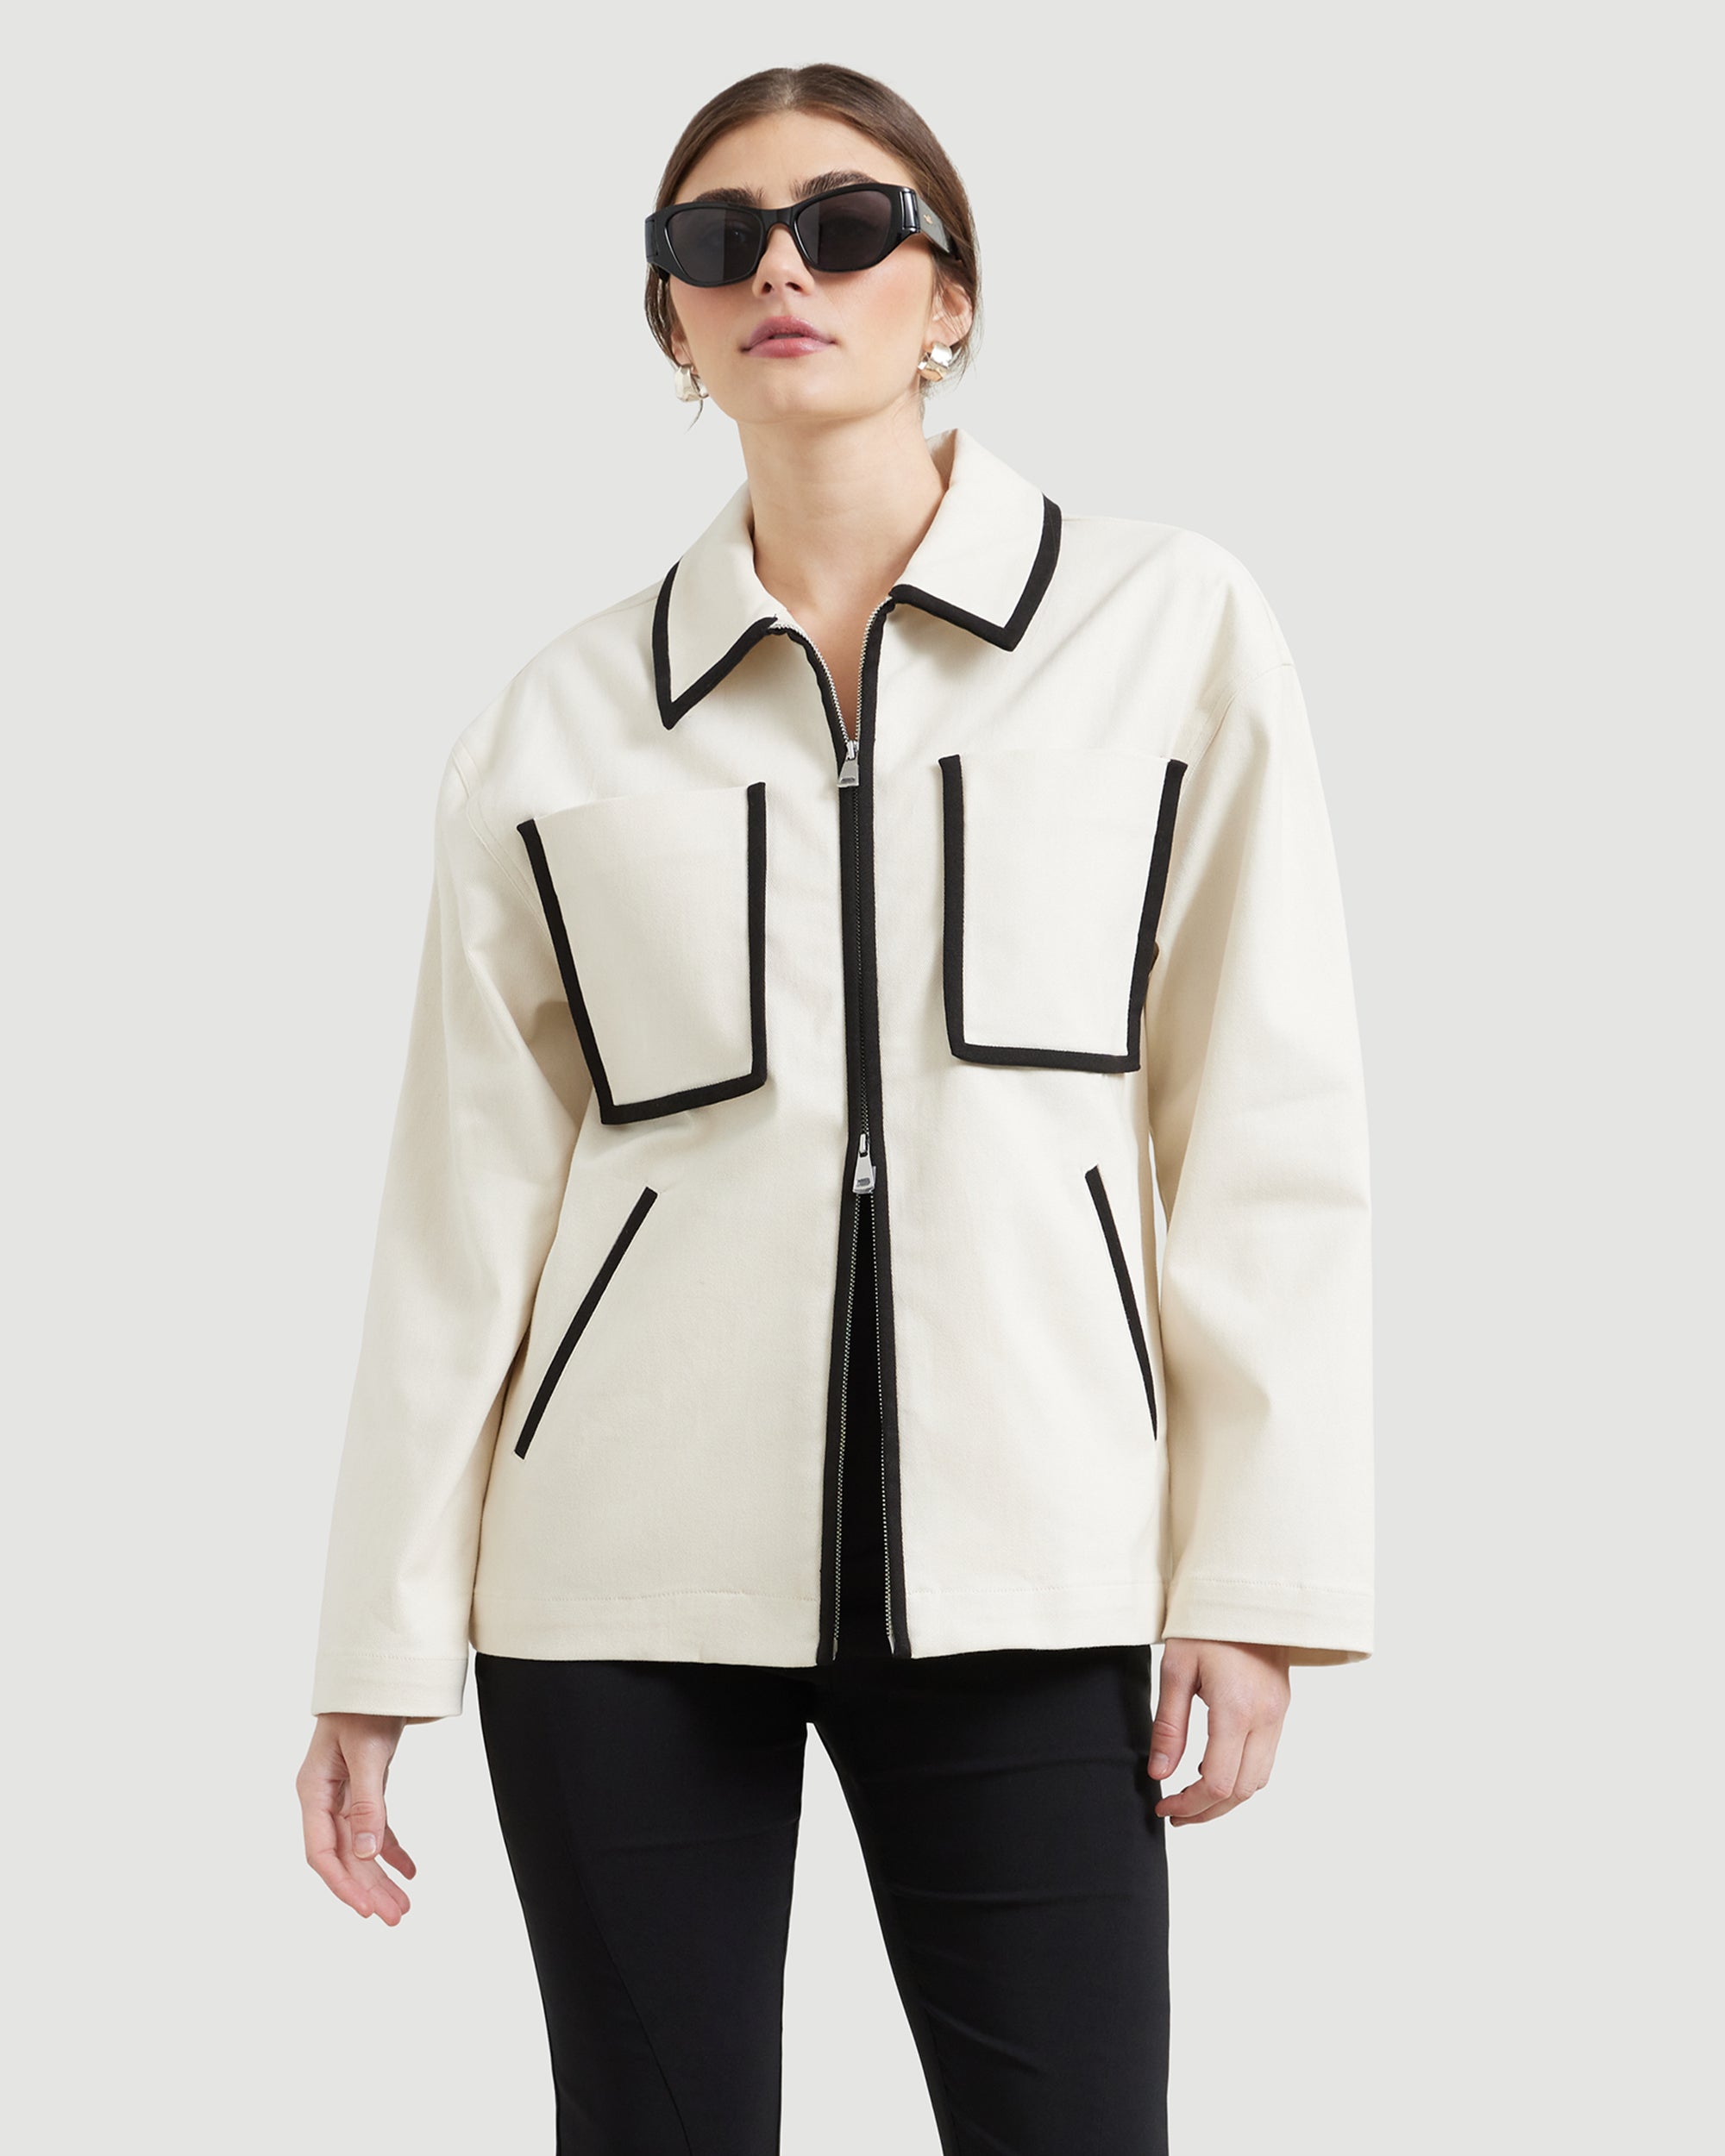 Women's Jackets & Coats | Women's Outerwear | Modern Citizen